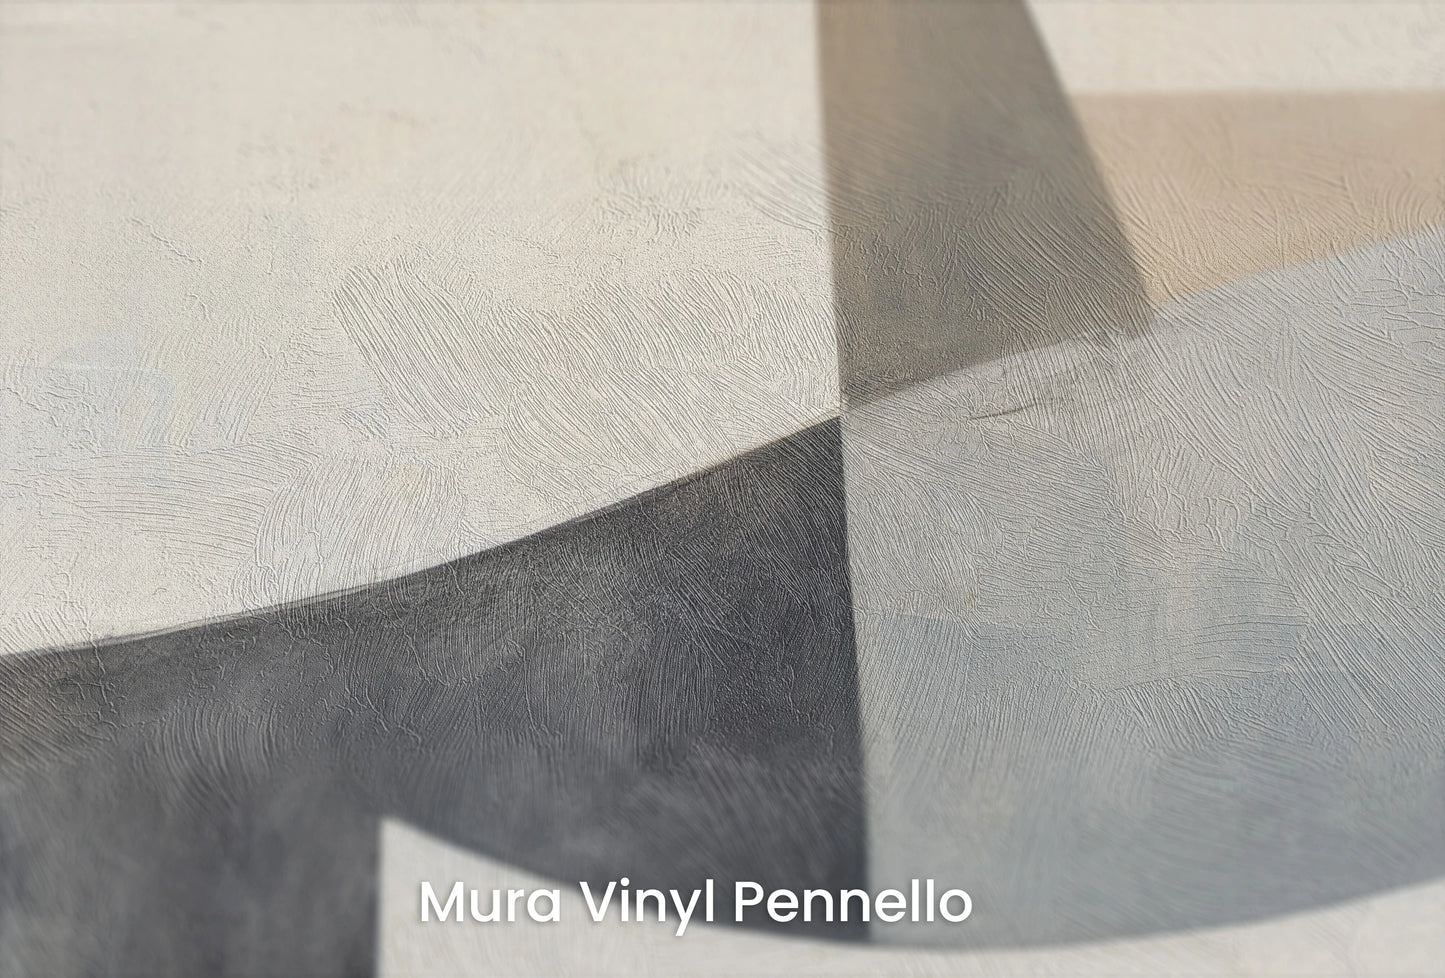 Zbliżenie na artystyczną fototapetę o nazwie Curved Tranquility na podłożu Mura Vinyl Pennello - faktura pociągnięć pędzla malarskiego.